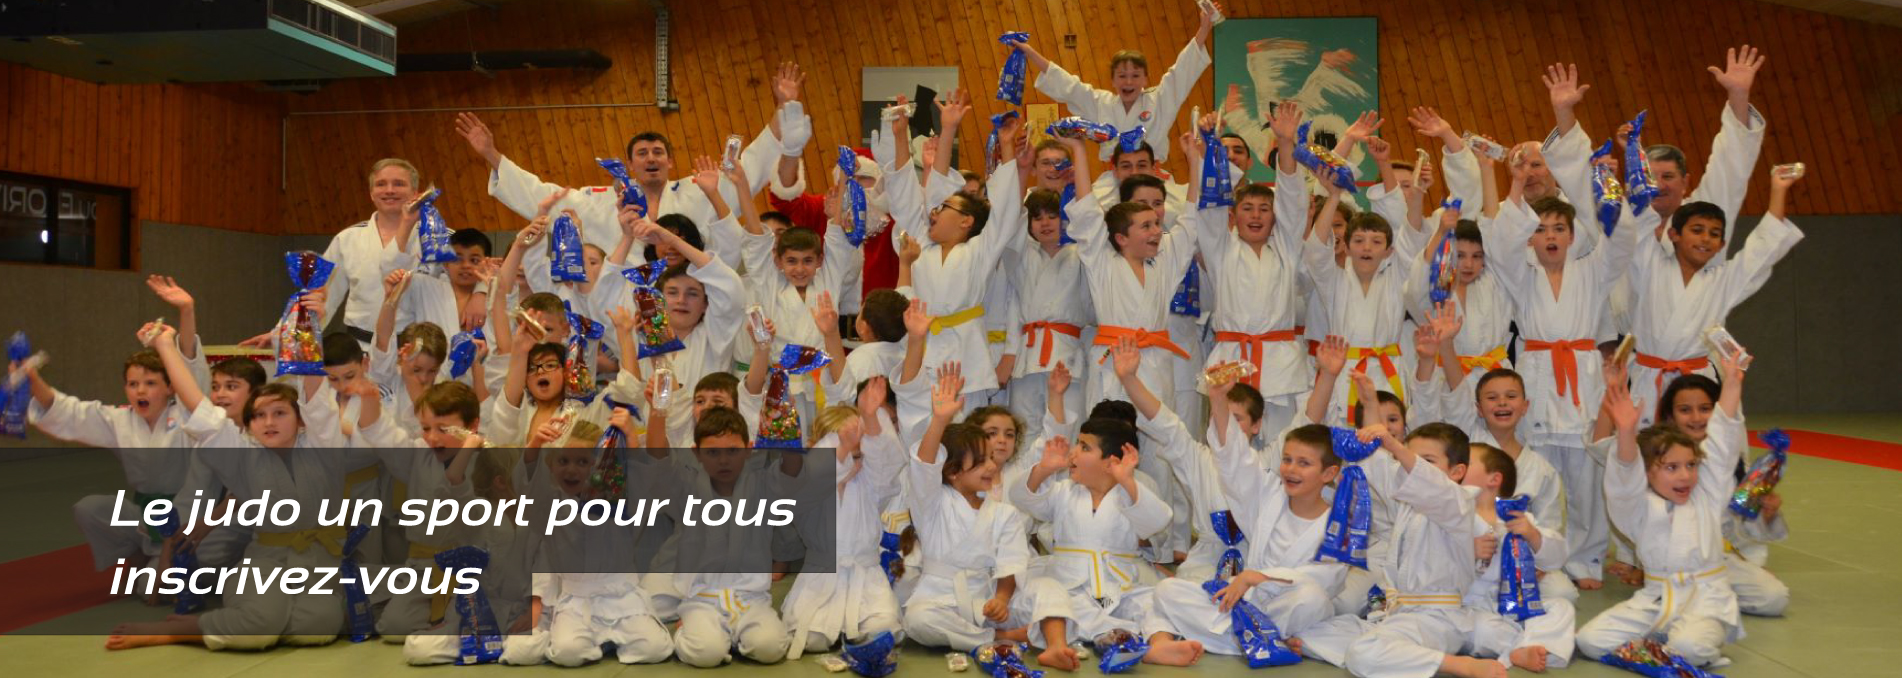 Le judo un sport pour tous